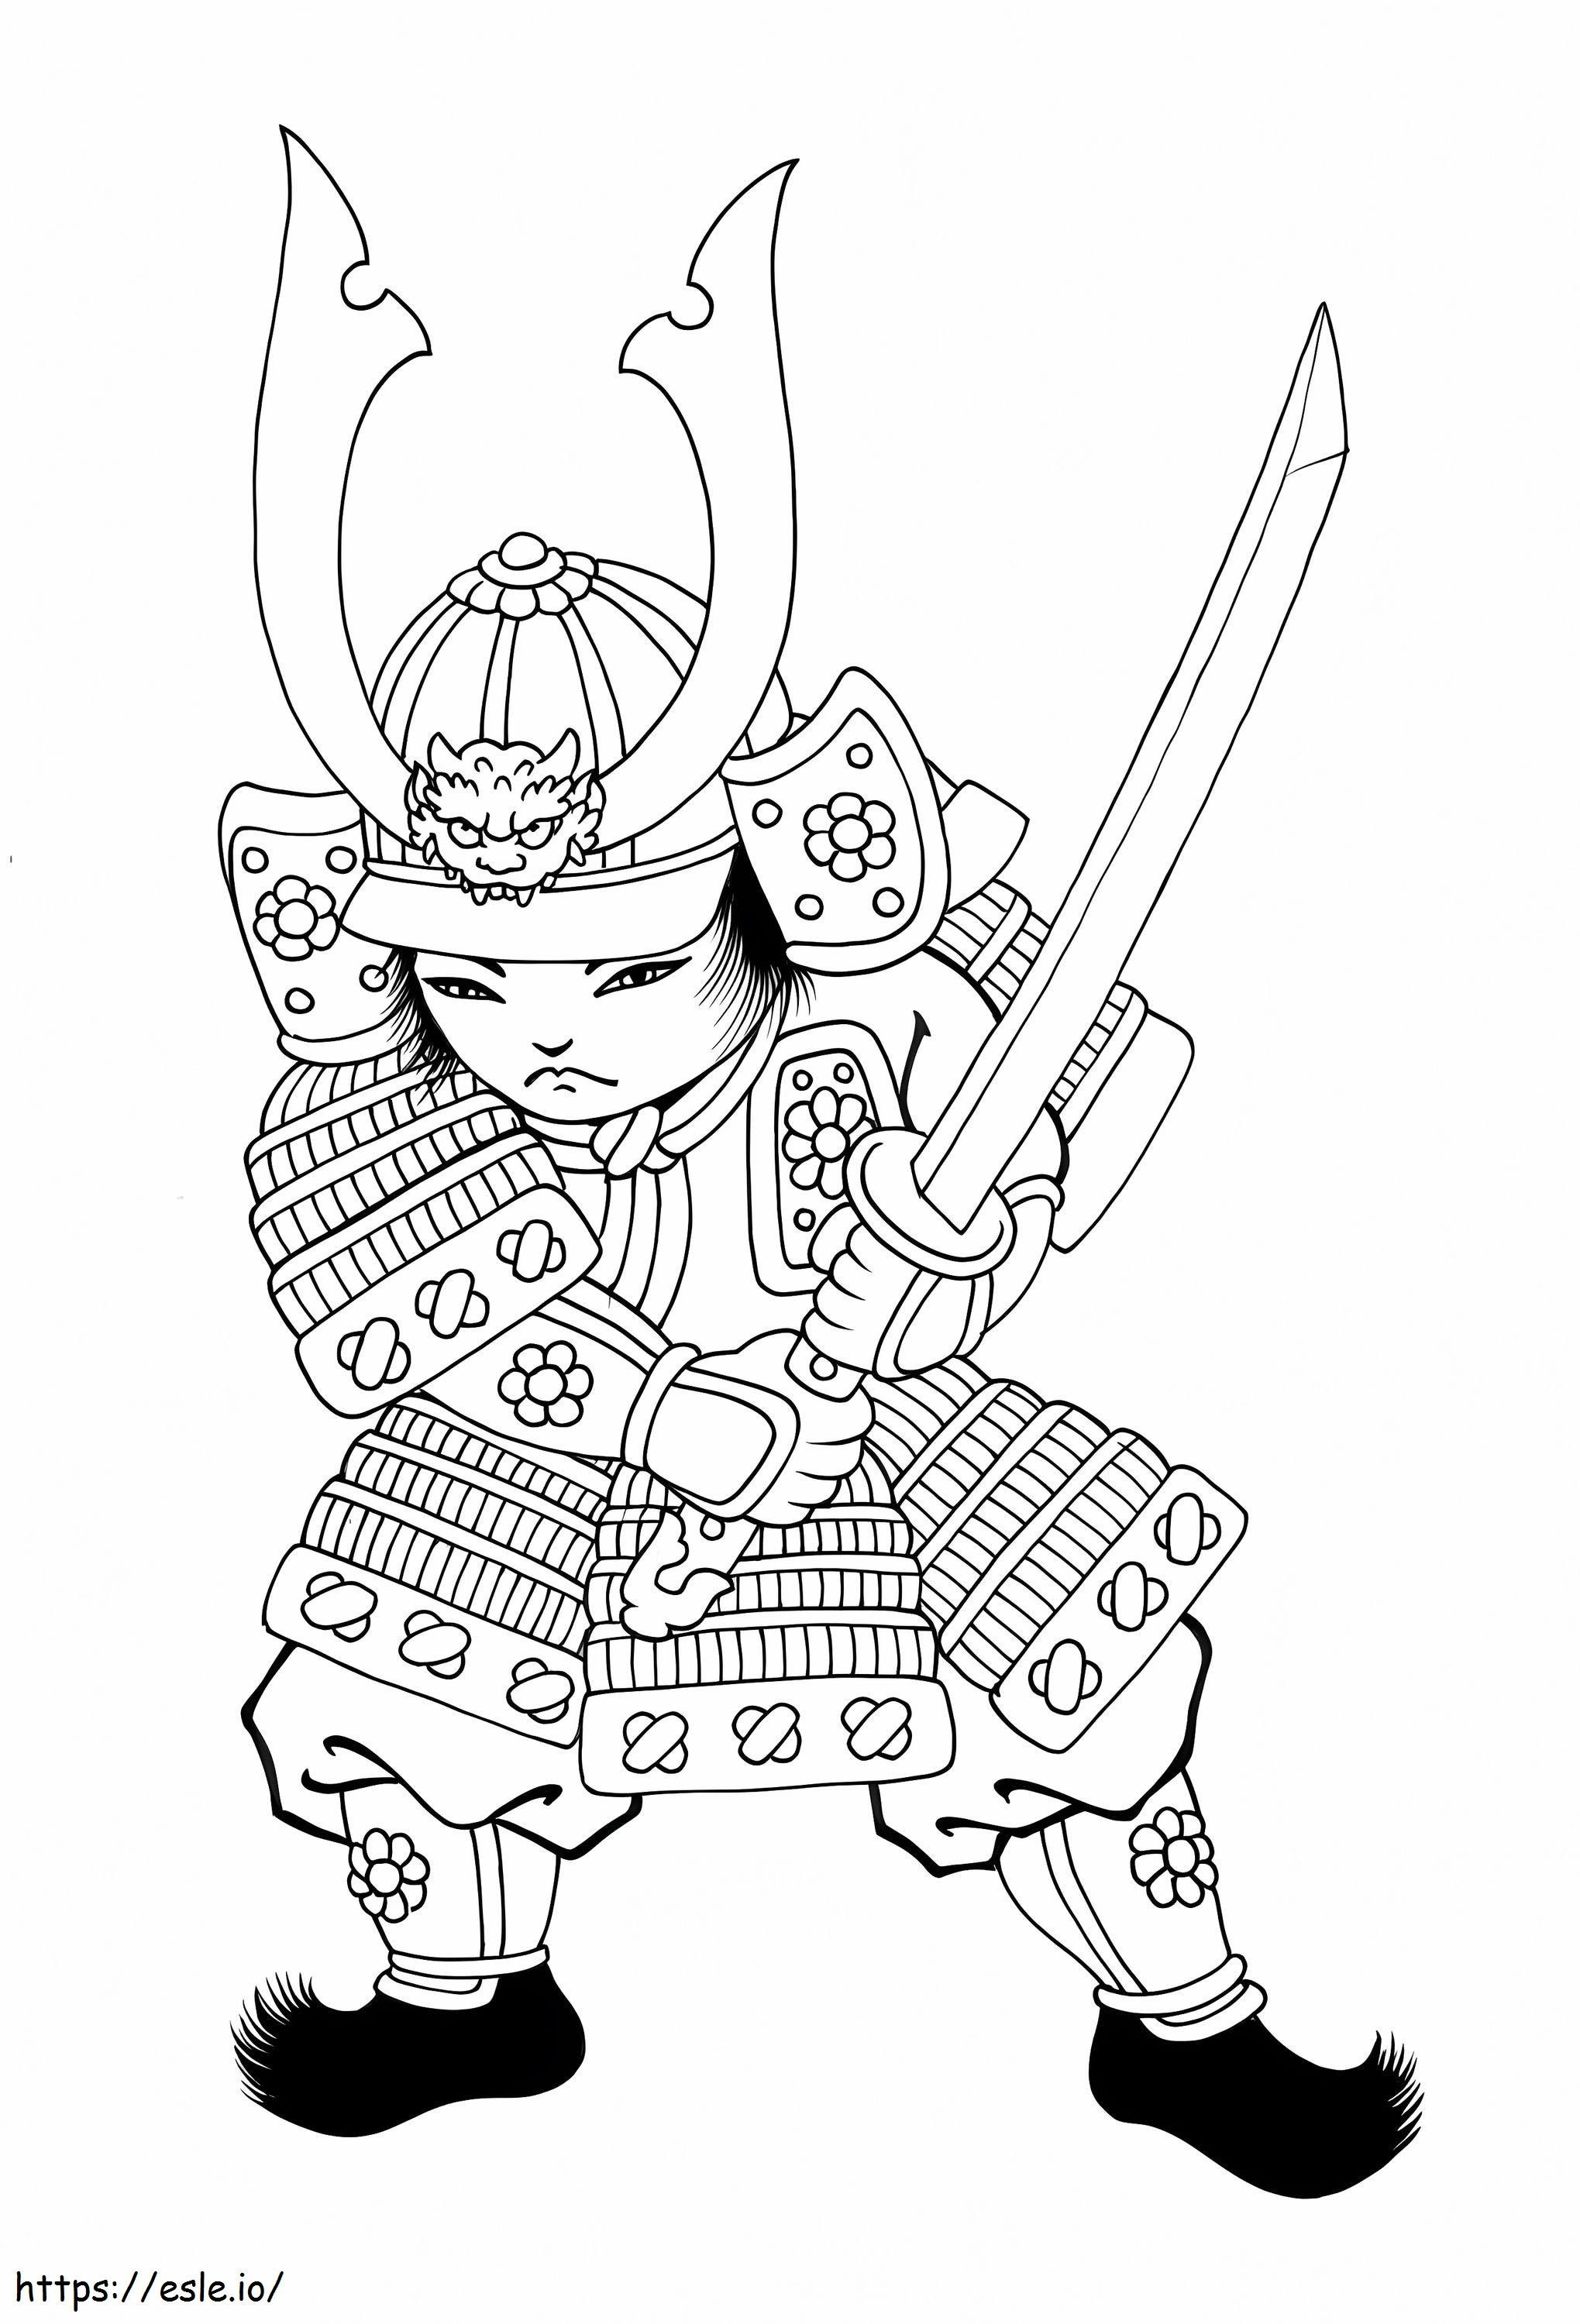 Chibi Samuraj Z Mieczem kolorowanka